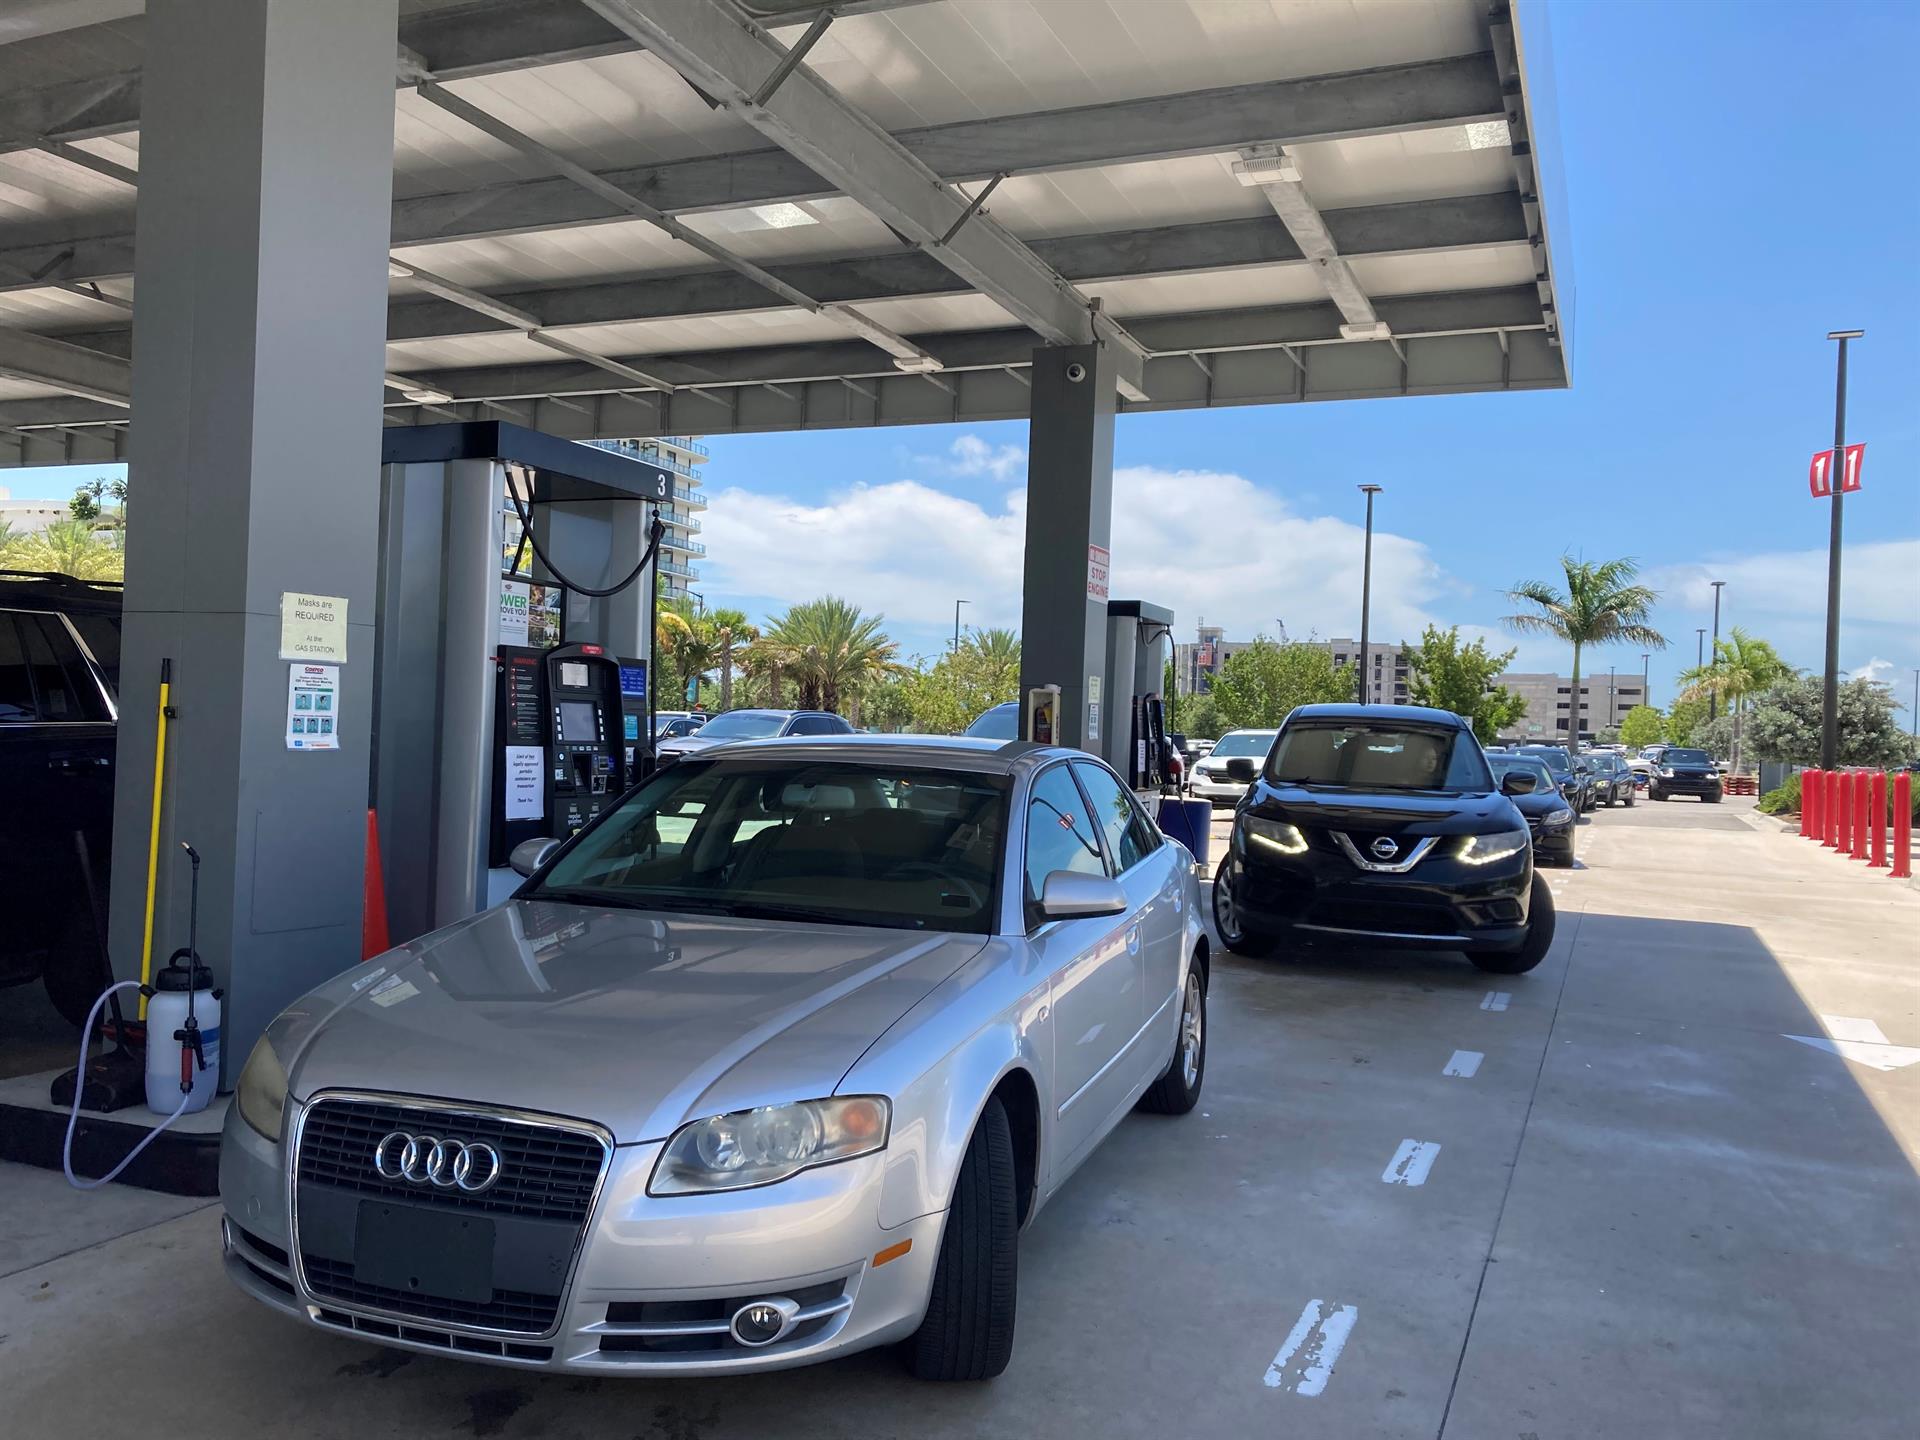 Varios autos esperan una larga fila para abastecerse en una estación de gasolina en Miami, Florida (EEUU). Imagen de archivo. EFE/ Ivonne Malaver
